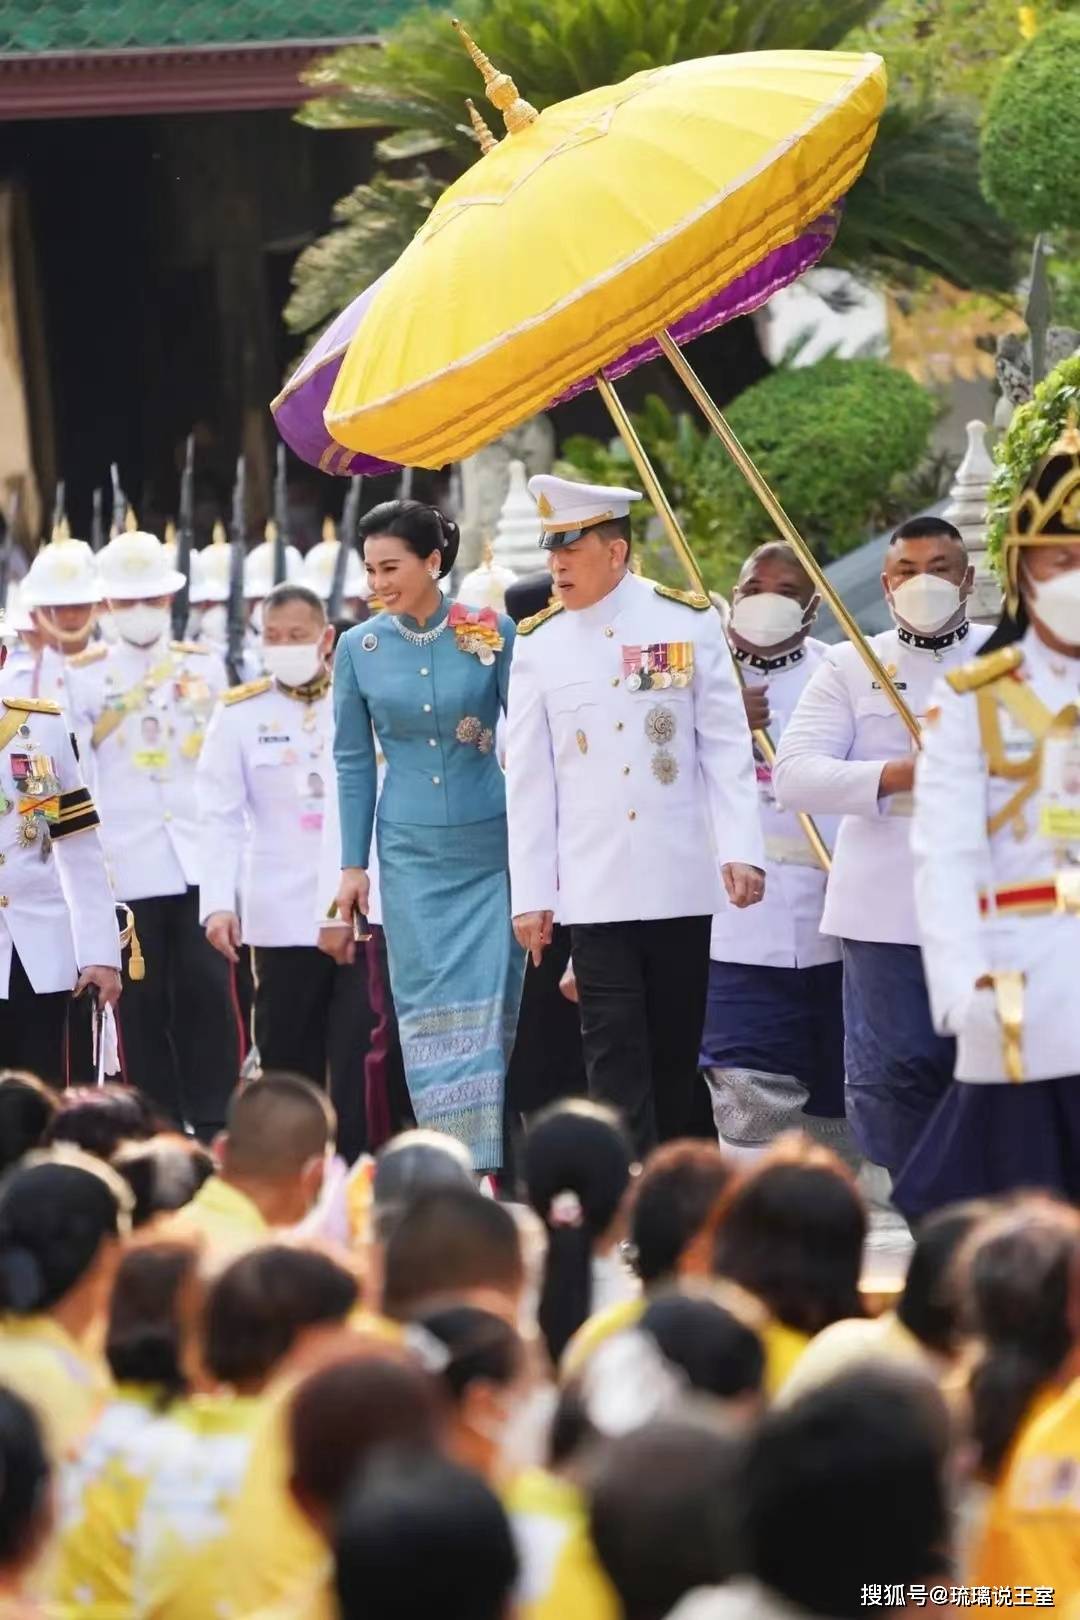 泰国王室参加民间活动,二王子没有被邀请参加,暴露和王室之间的真实